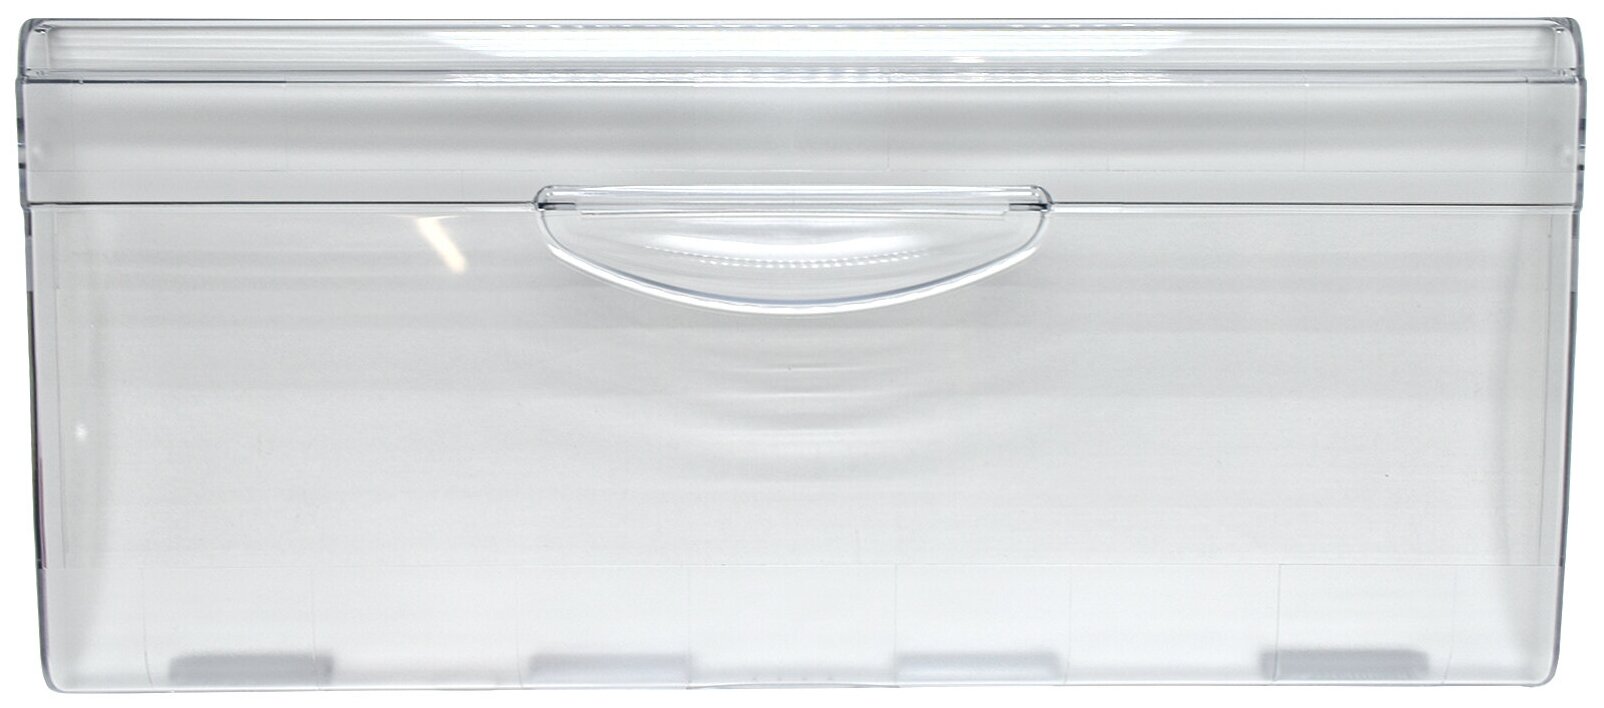 Панель нижнего ящика морозильной камеры для холодильника Минск, Атлант, без защелок сверху, 774142100900